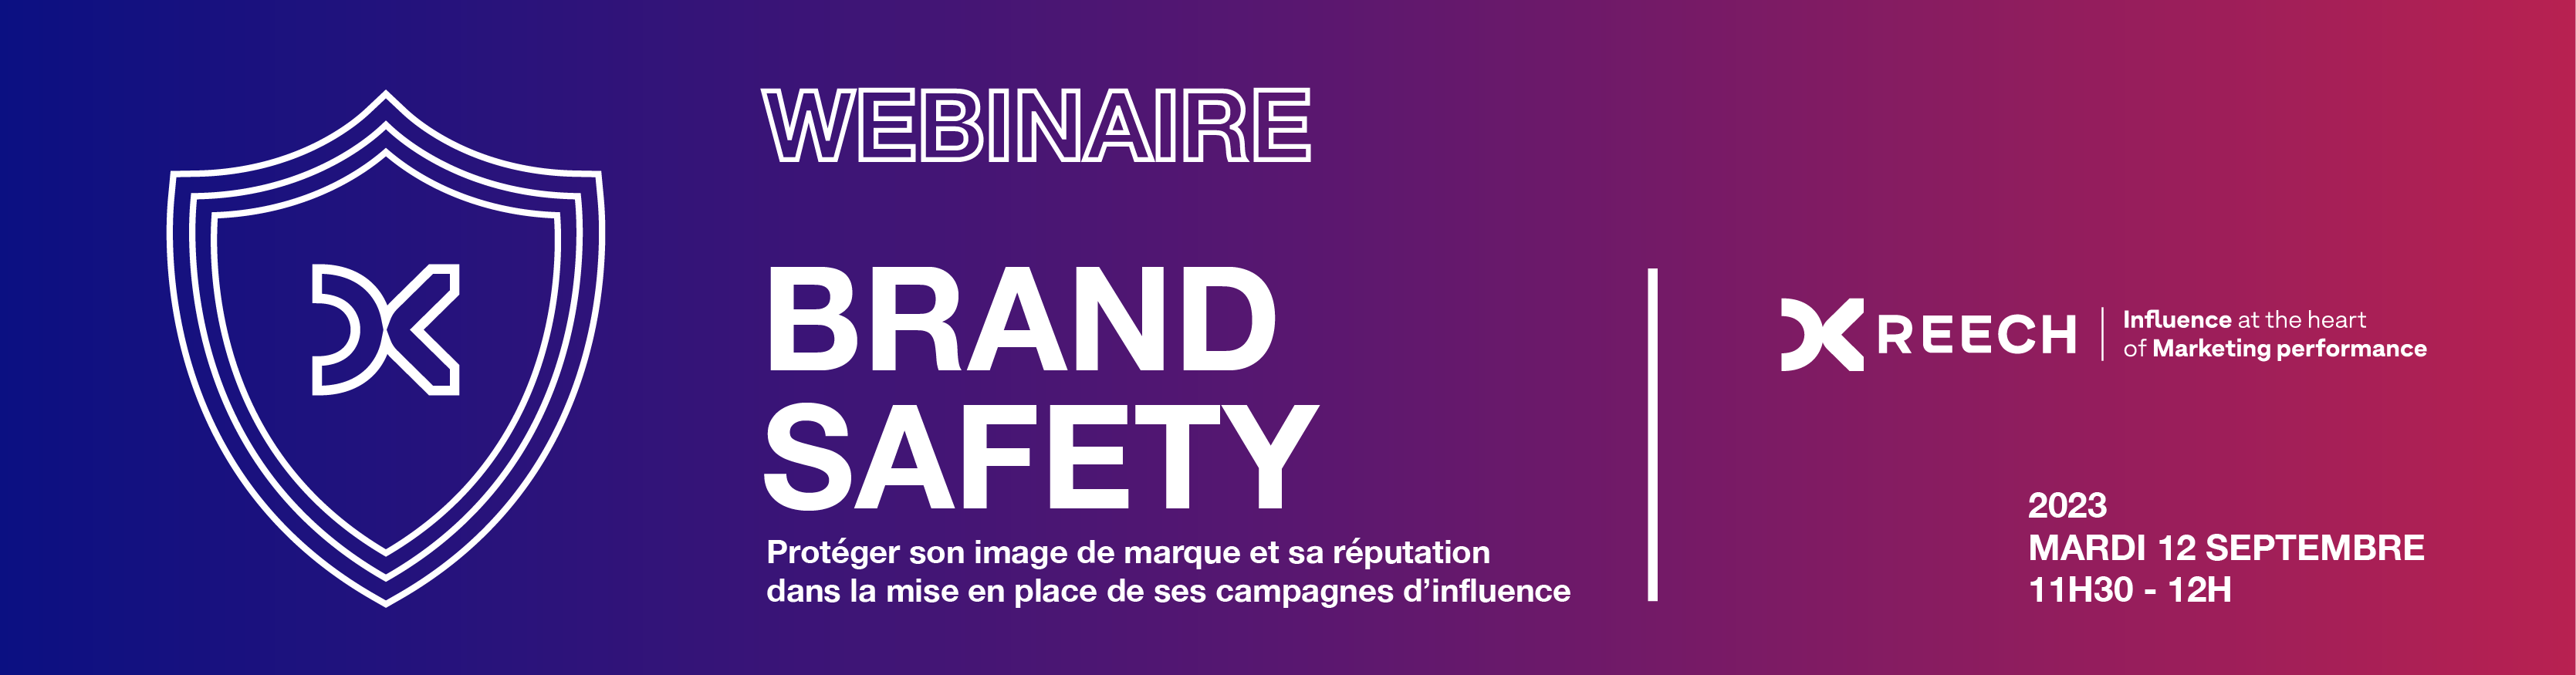 VF_Banniere_Brand safety